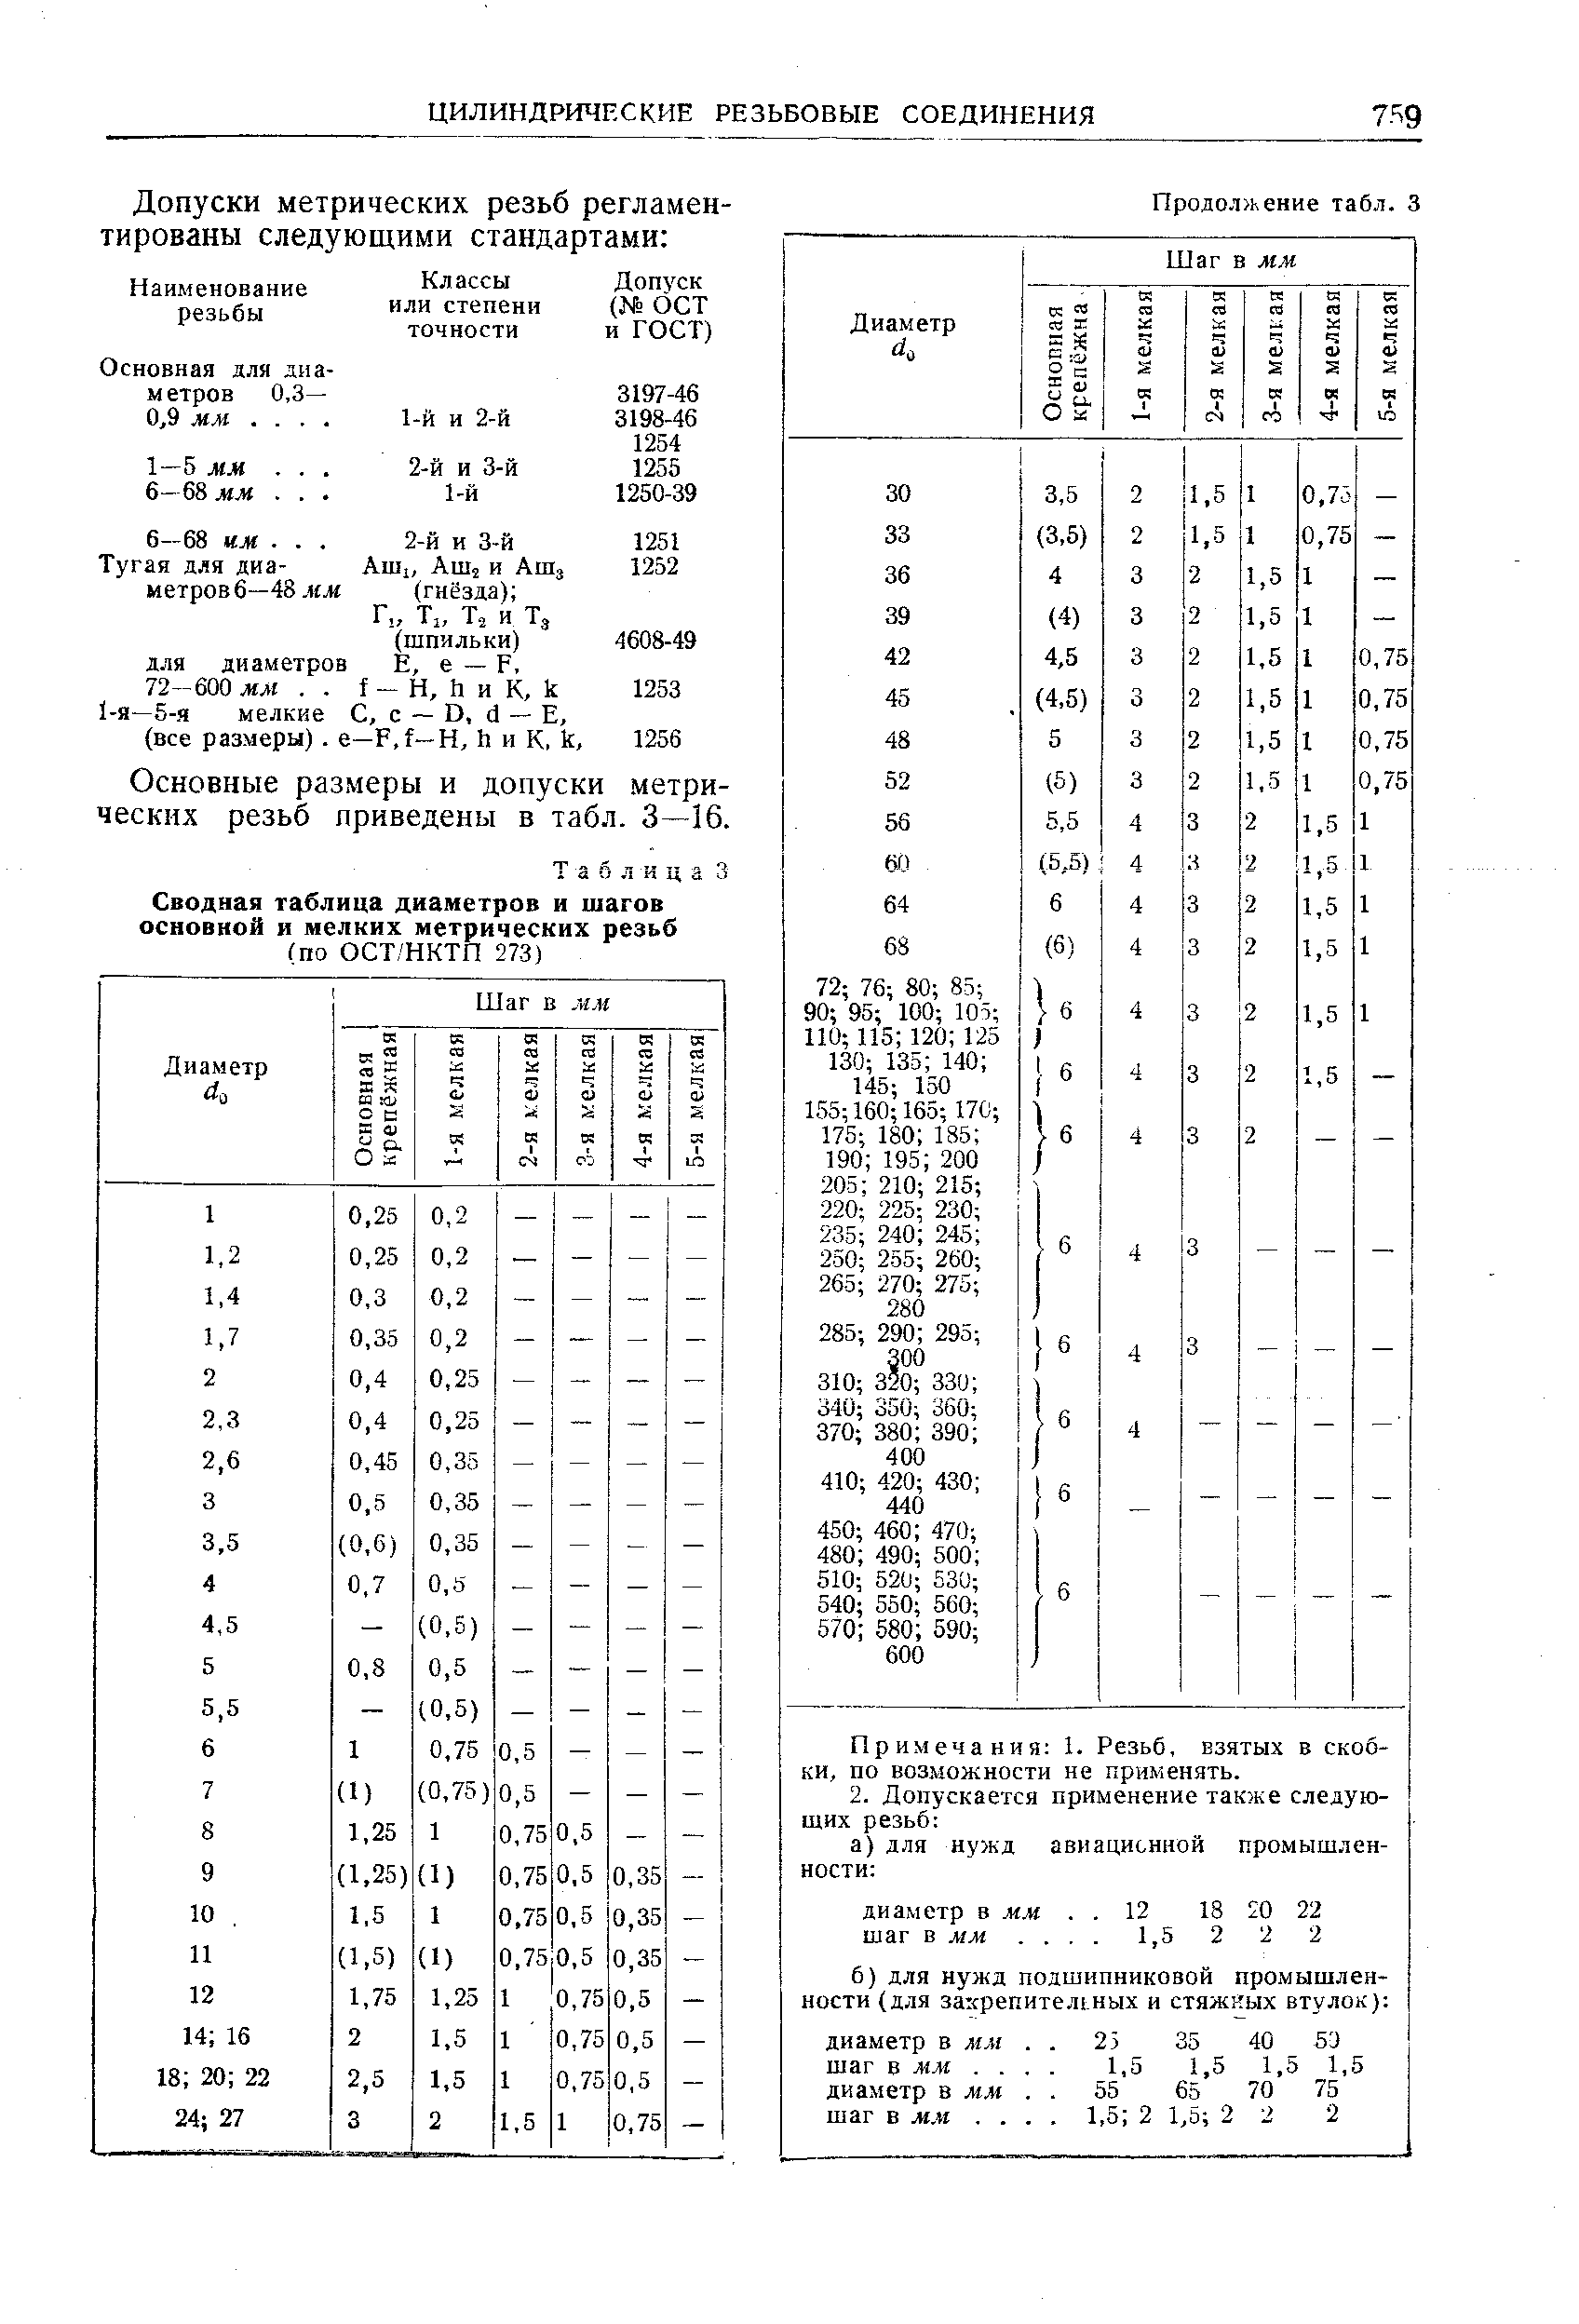 Таблица 3 Сводная таблица диаметров и шагов основной и мелких метрических резьб
